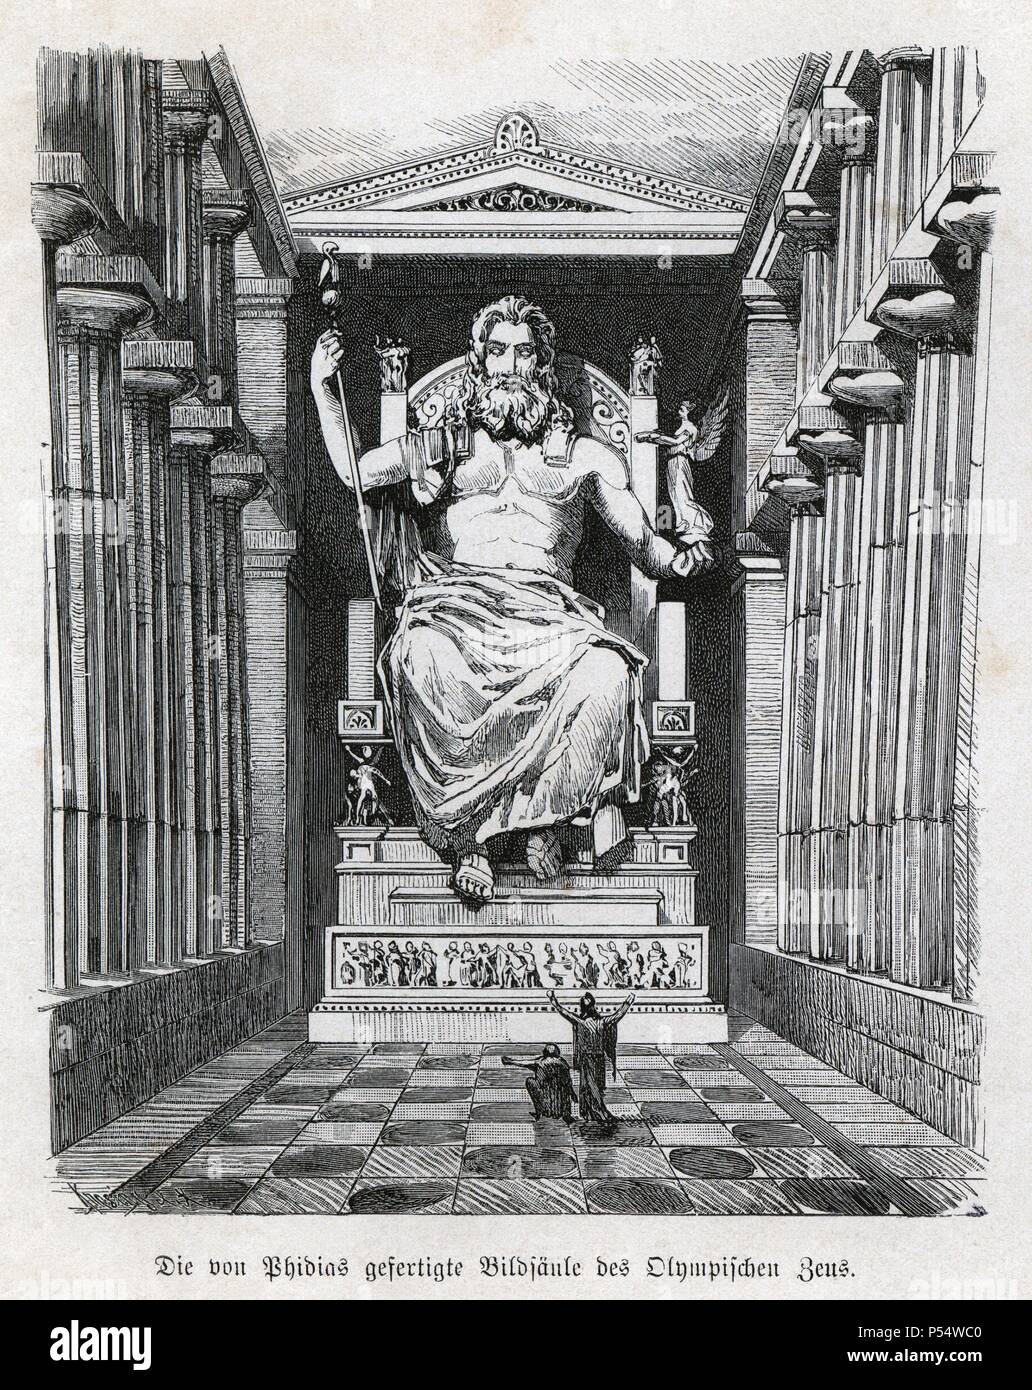 Historia Antigua. Las siete maravillas del mundo antiguo. Estatua y Templo de Zeus (Júpiter). Grabado alemán de 1886. Foto Stock